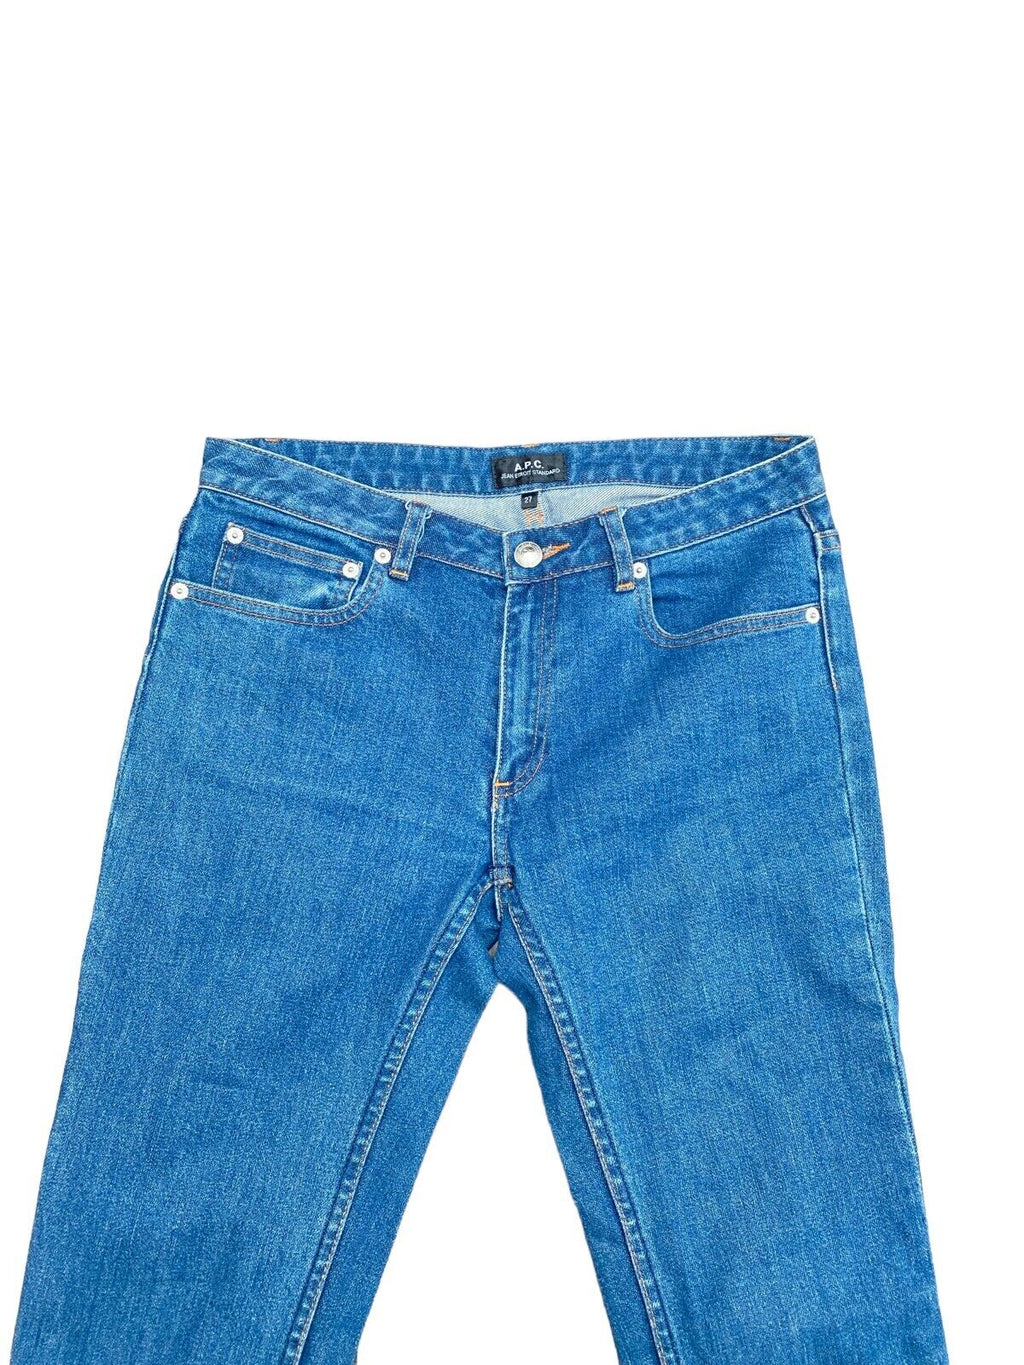 Jean Etroit Standard  Denim Jeans